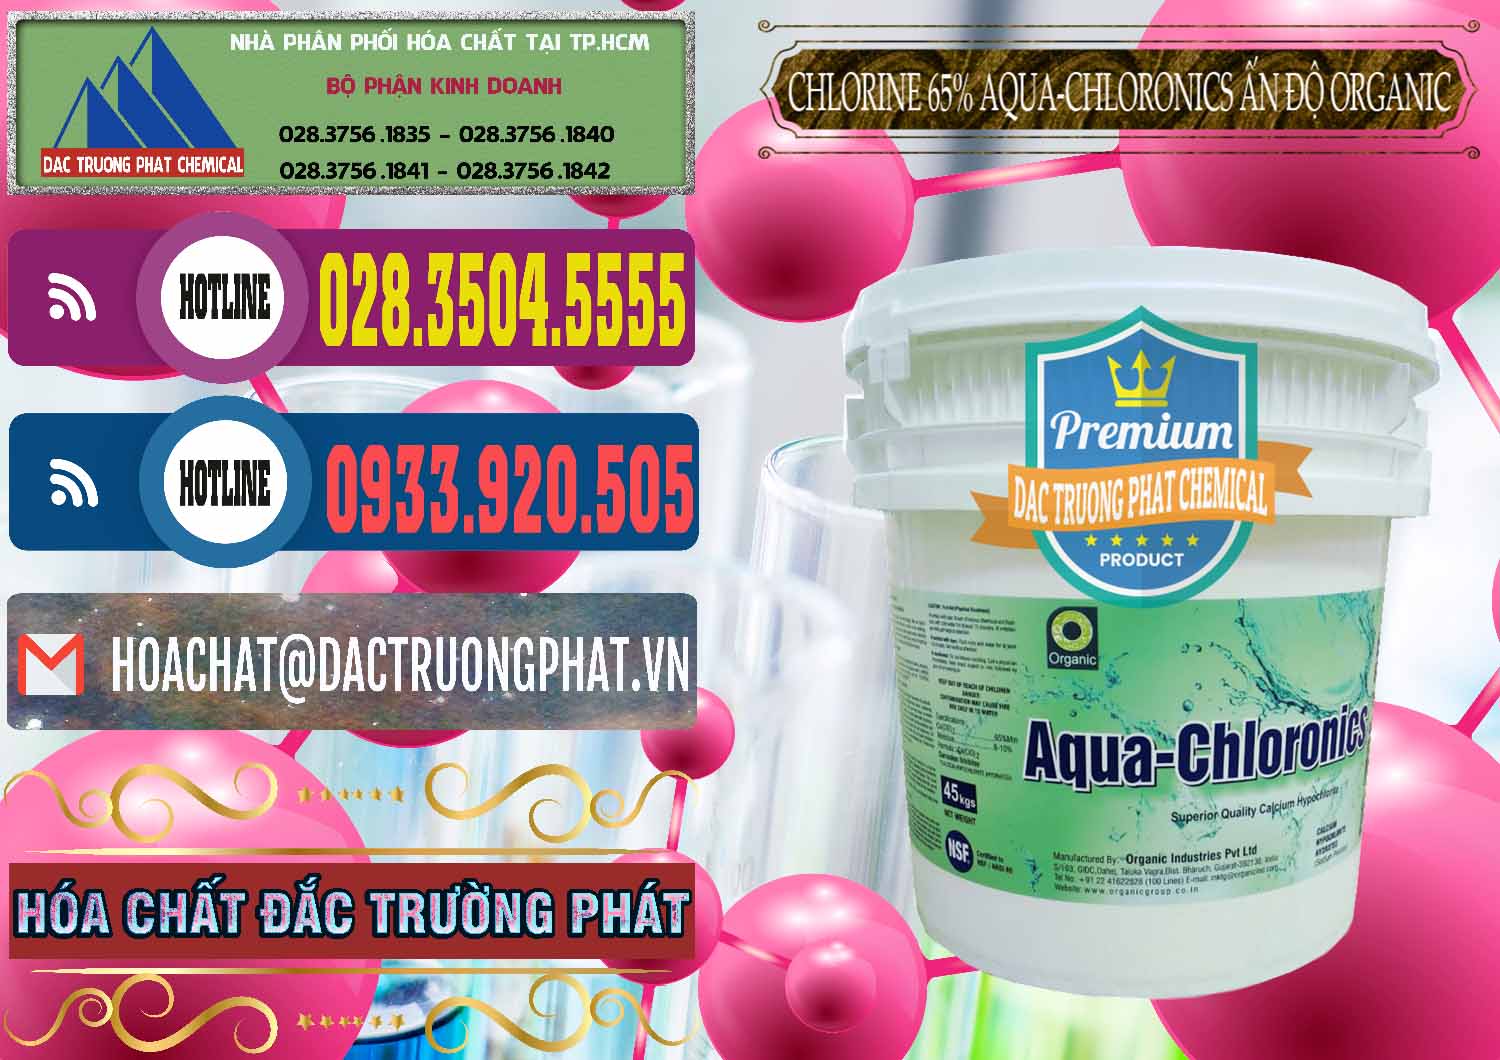 Công ty chuyên kinh doanh & bán Chlorine – Clorin 65% Aqua-Chloronics Ấn Độ Organic India - 0210 - Đơn vị cung cấp _ kinh doanh hóa chất tại TP.HCM - muabanhoachat.com.vn